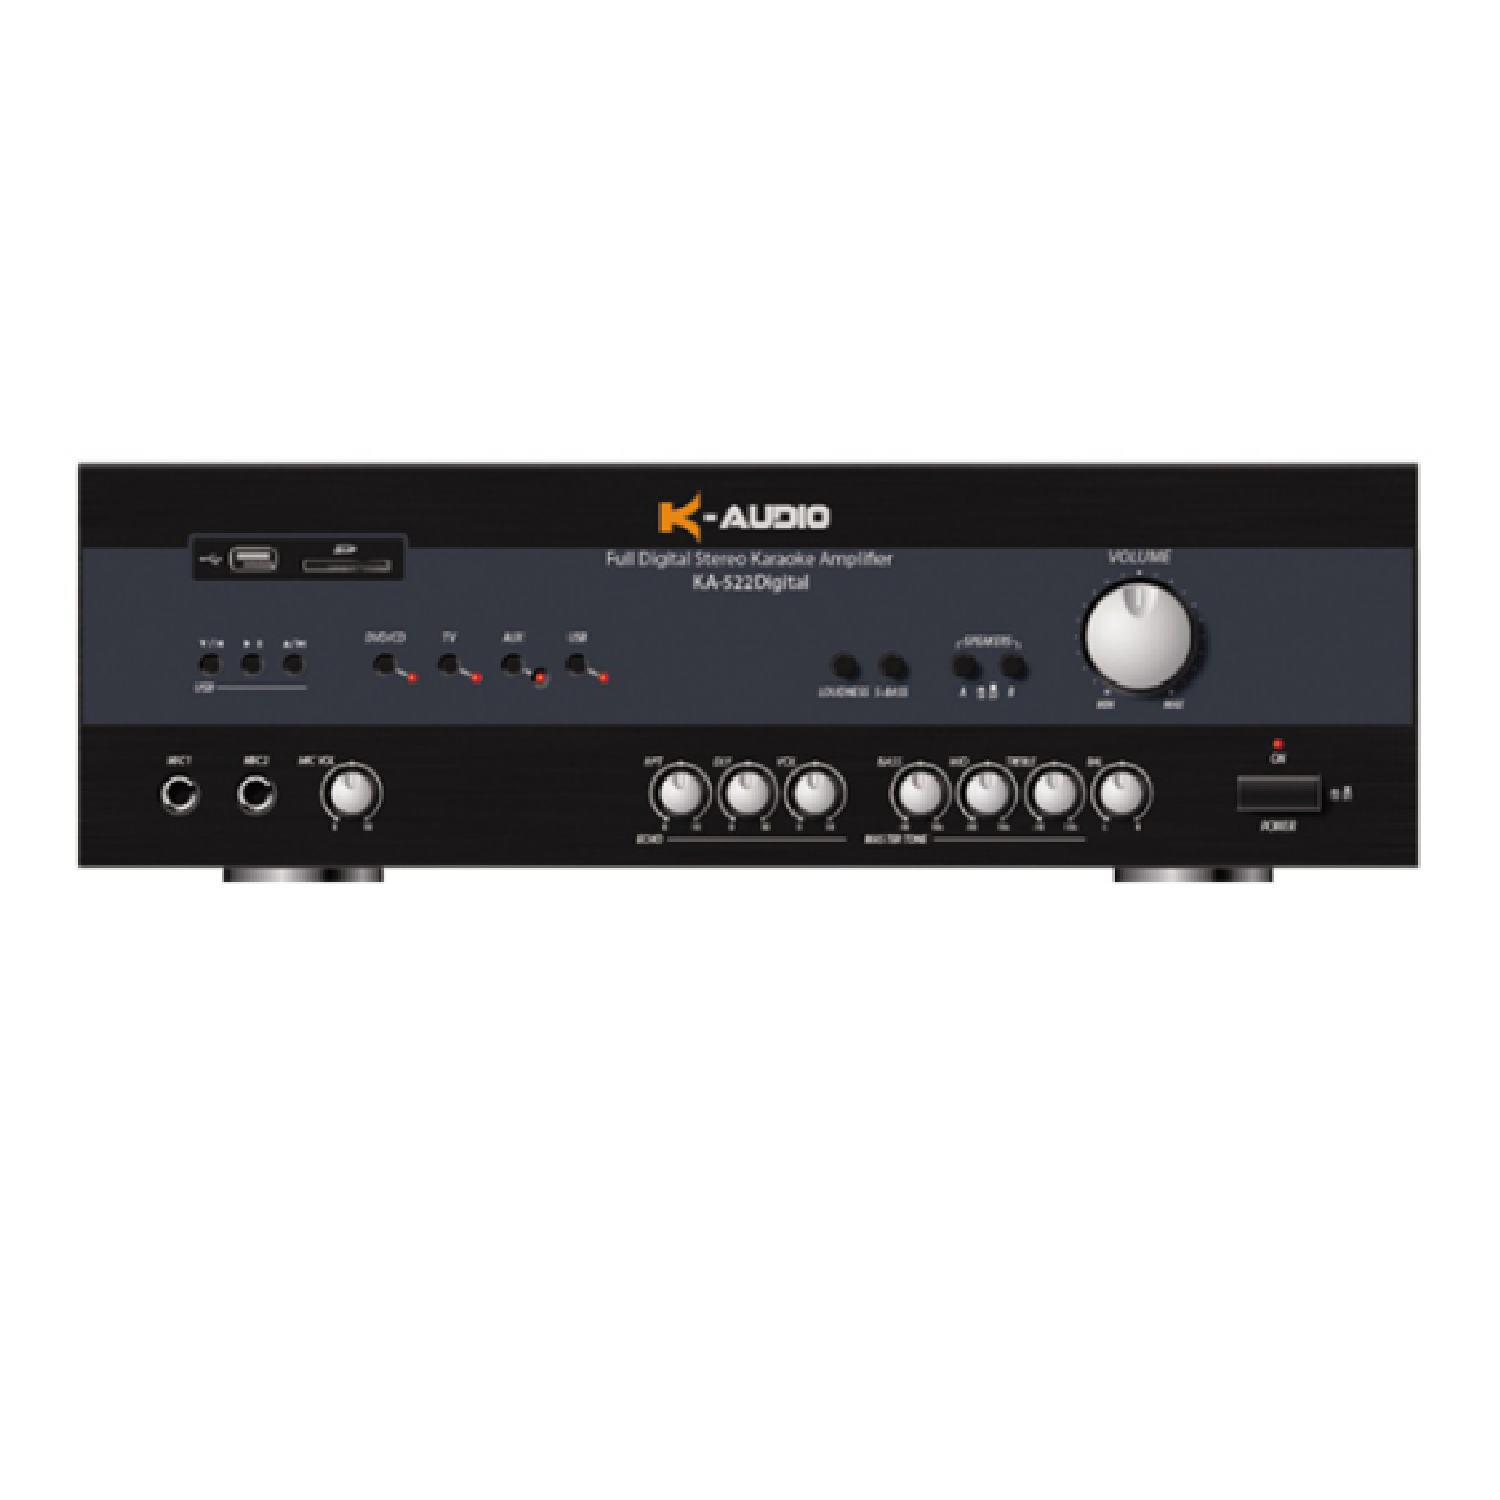 150W x 2 Full Digital Karaoke Amplifier USB/SD/MP3   KA 522D konzert